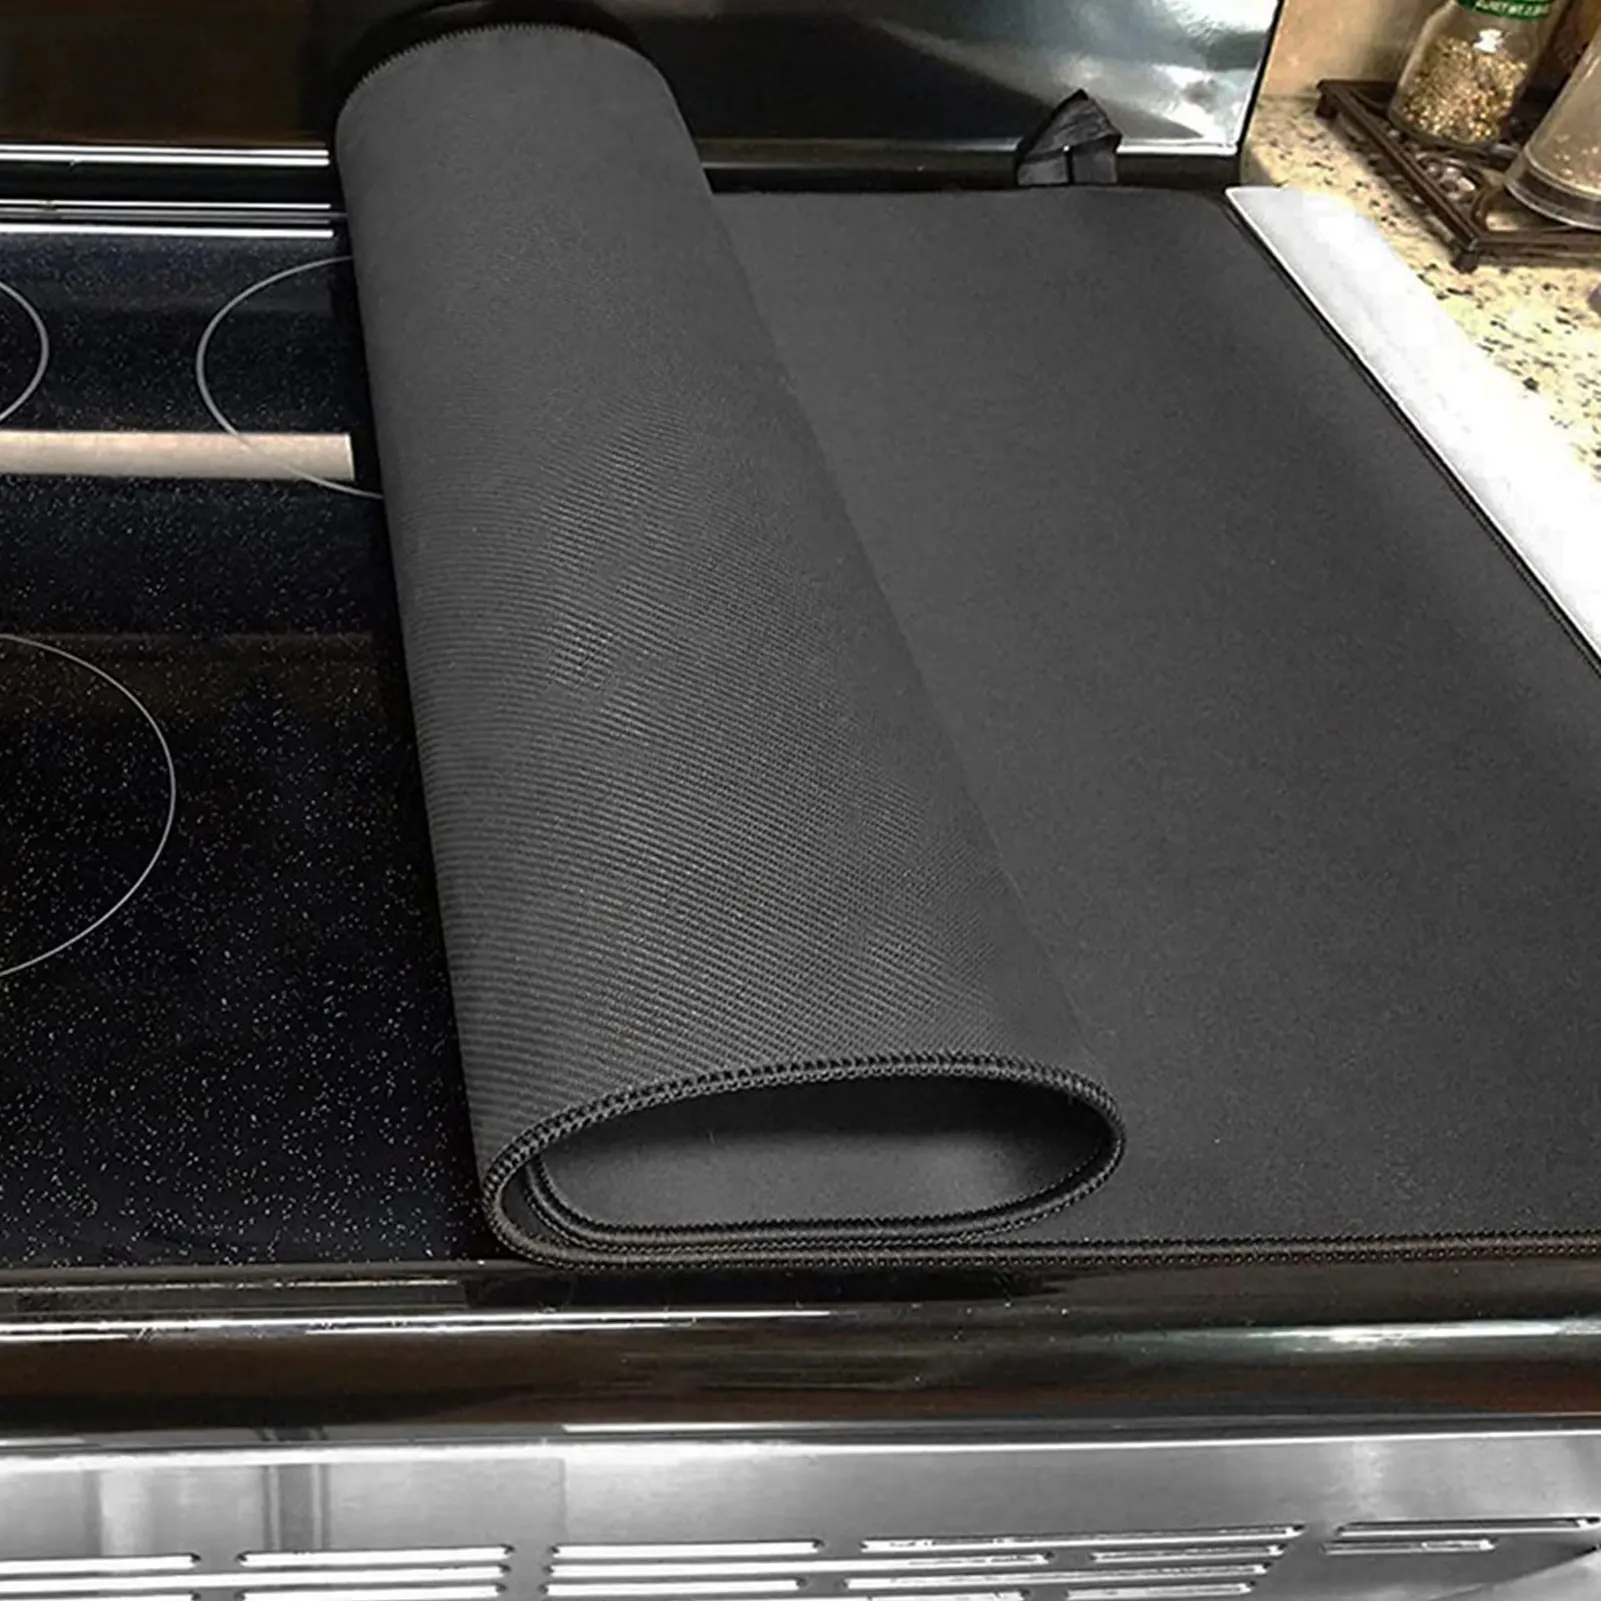 

Верхняя крышка индукционной плиты, защитный коврик для индукционной плиты, нескользящие накладки на плиту, не скользит